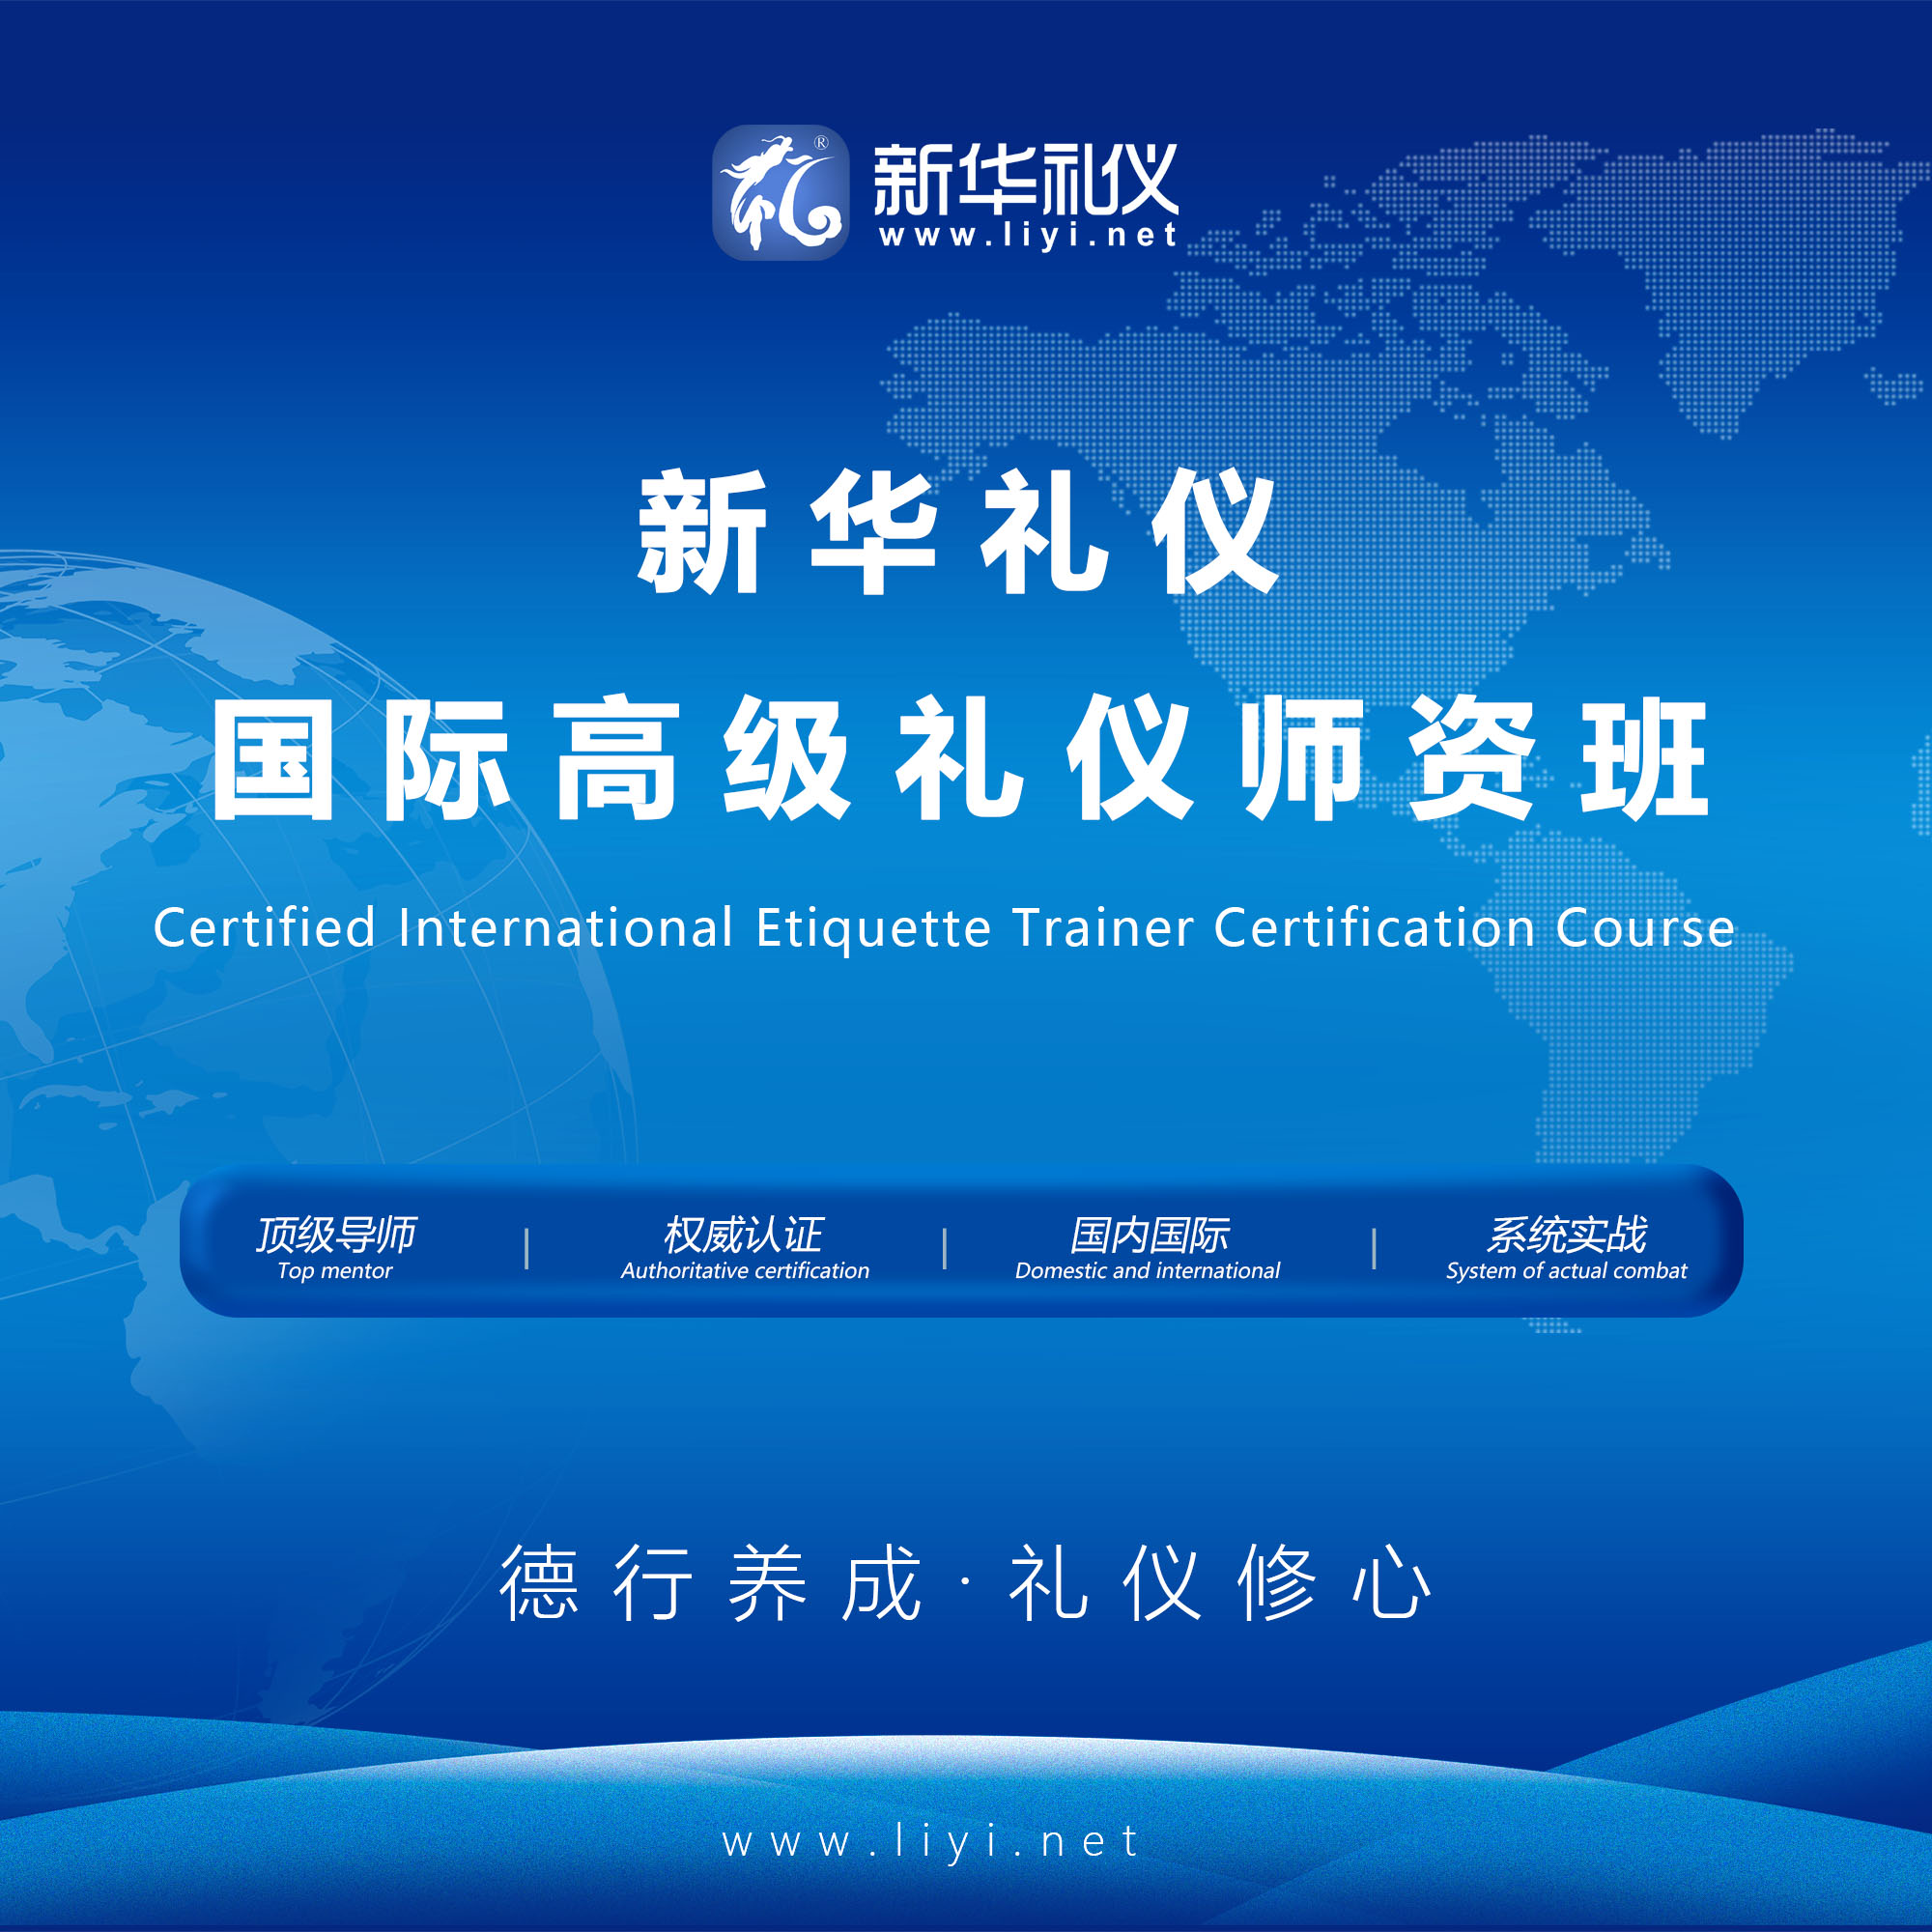 顺义2020年6月25日·上海·新华礼伊《国际注册高级礼仪培训师认证班》